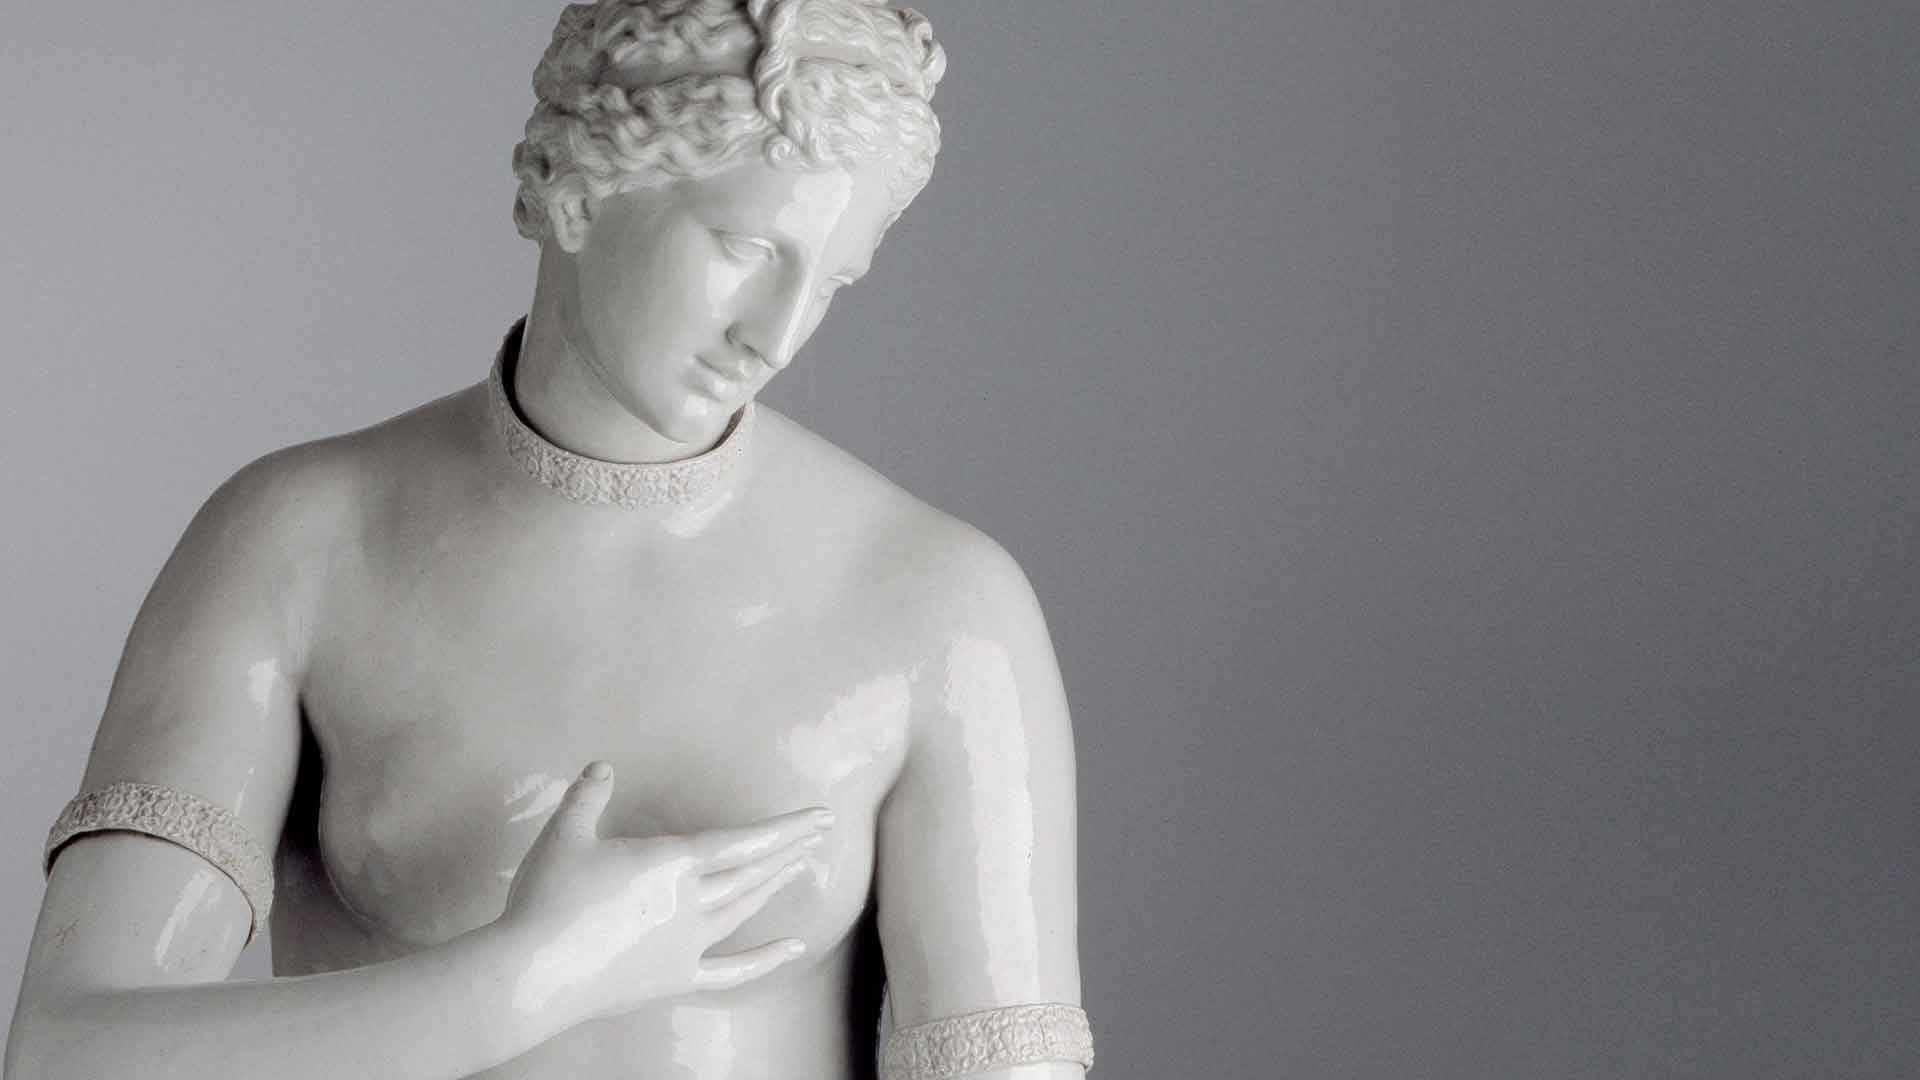 Venere de' Medici manifattura Ginori di Doccia, scultura in porcellana bianca raffigurante una figura classica con lo sguardo basso, mano sul petto, capelli ricci, tratti somatici definiti, sfondo neutro.